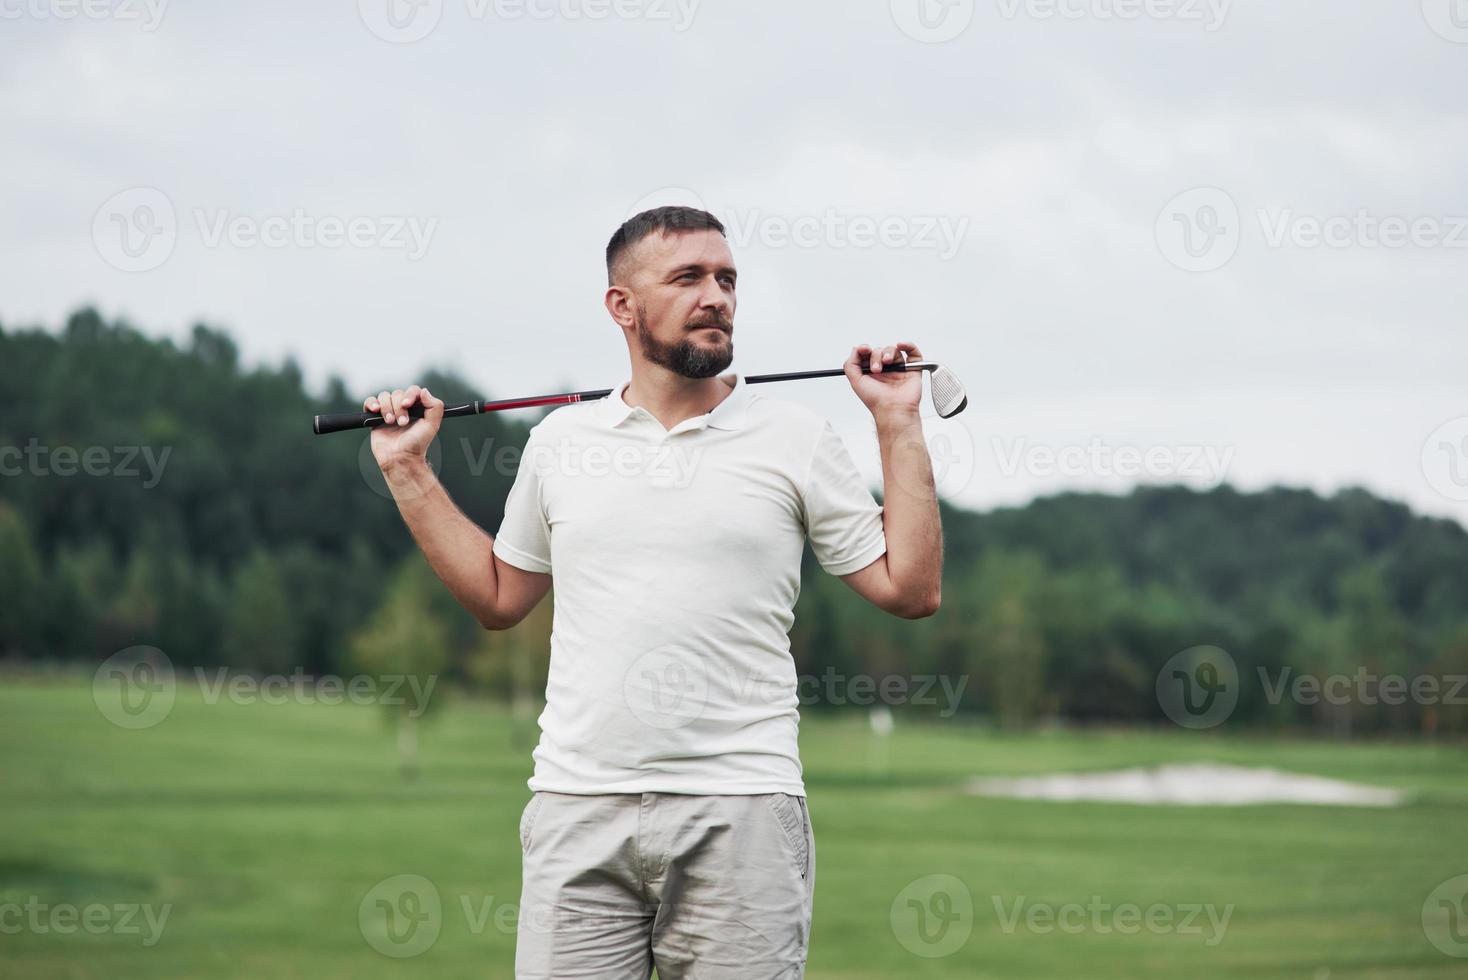 ver weg kijken. portret van staande golfspeler in het gazon en stok in de hand. bossen op de achtergrond foto